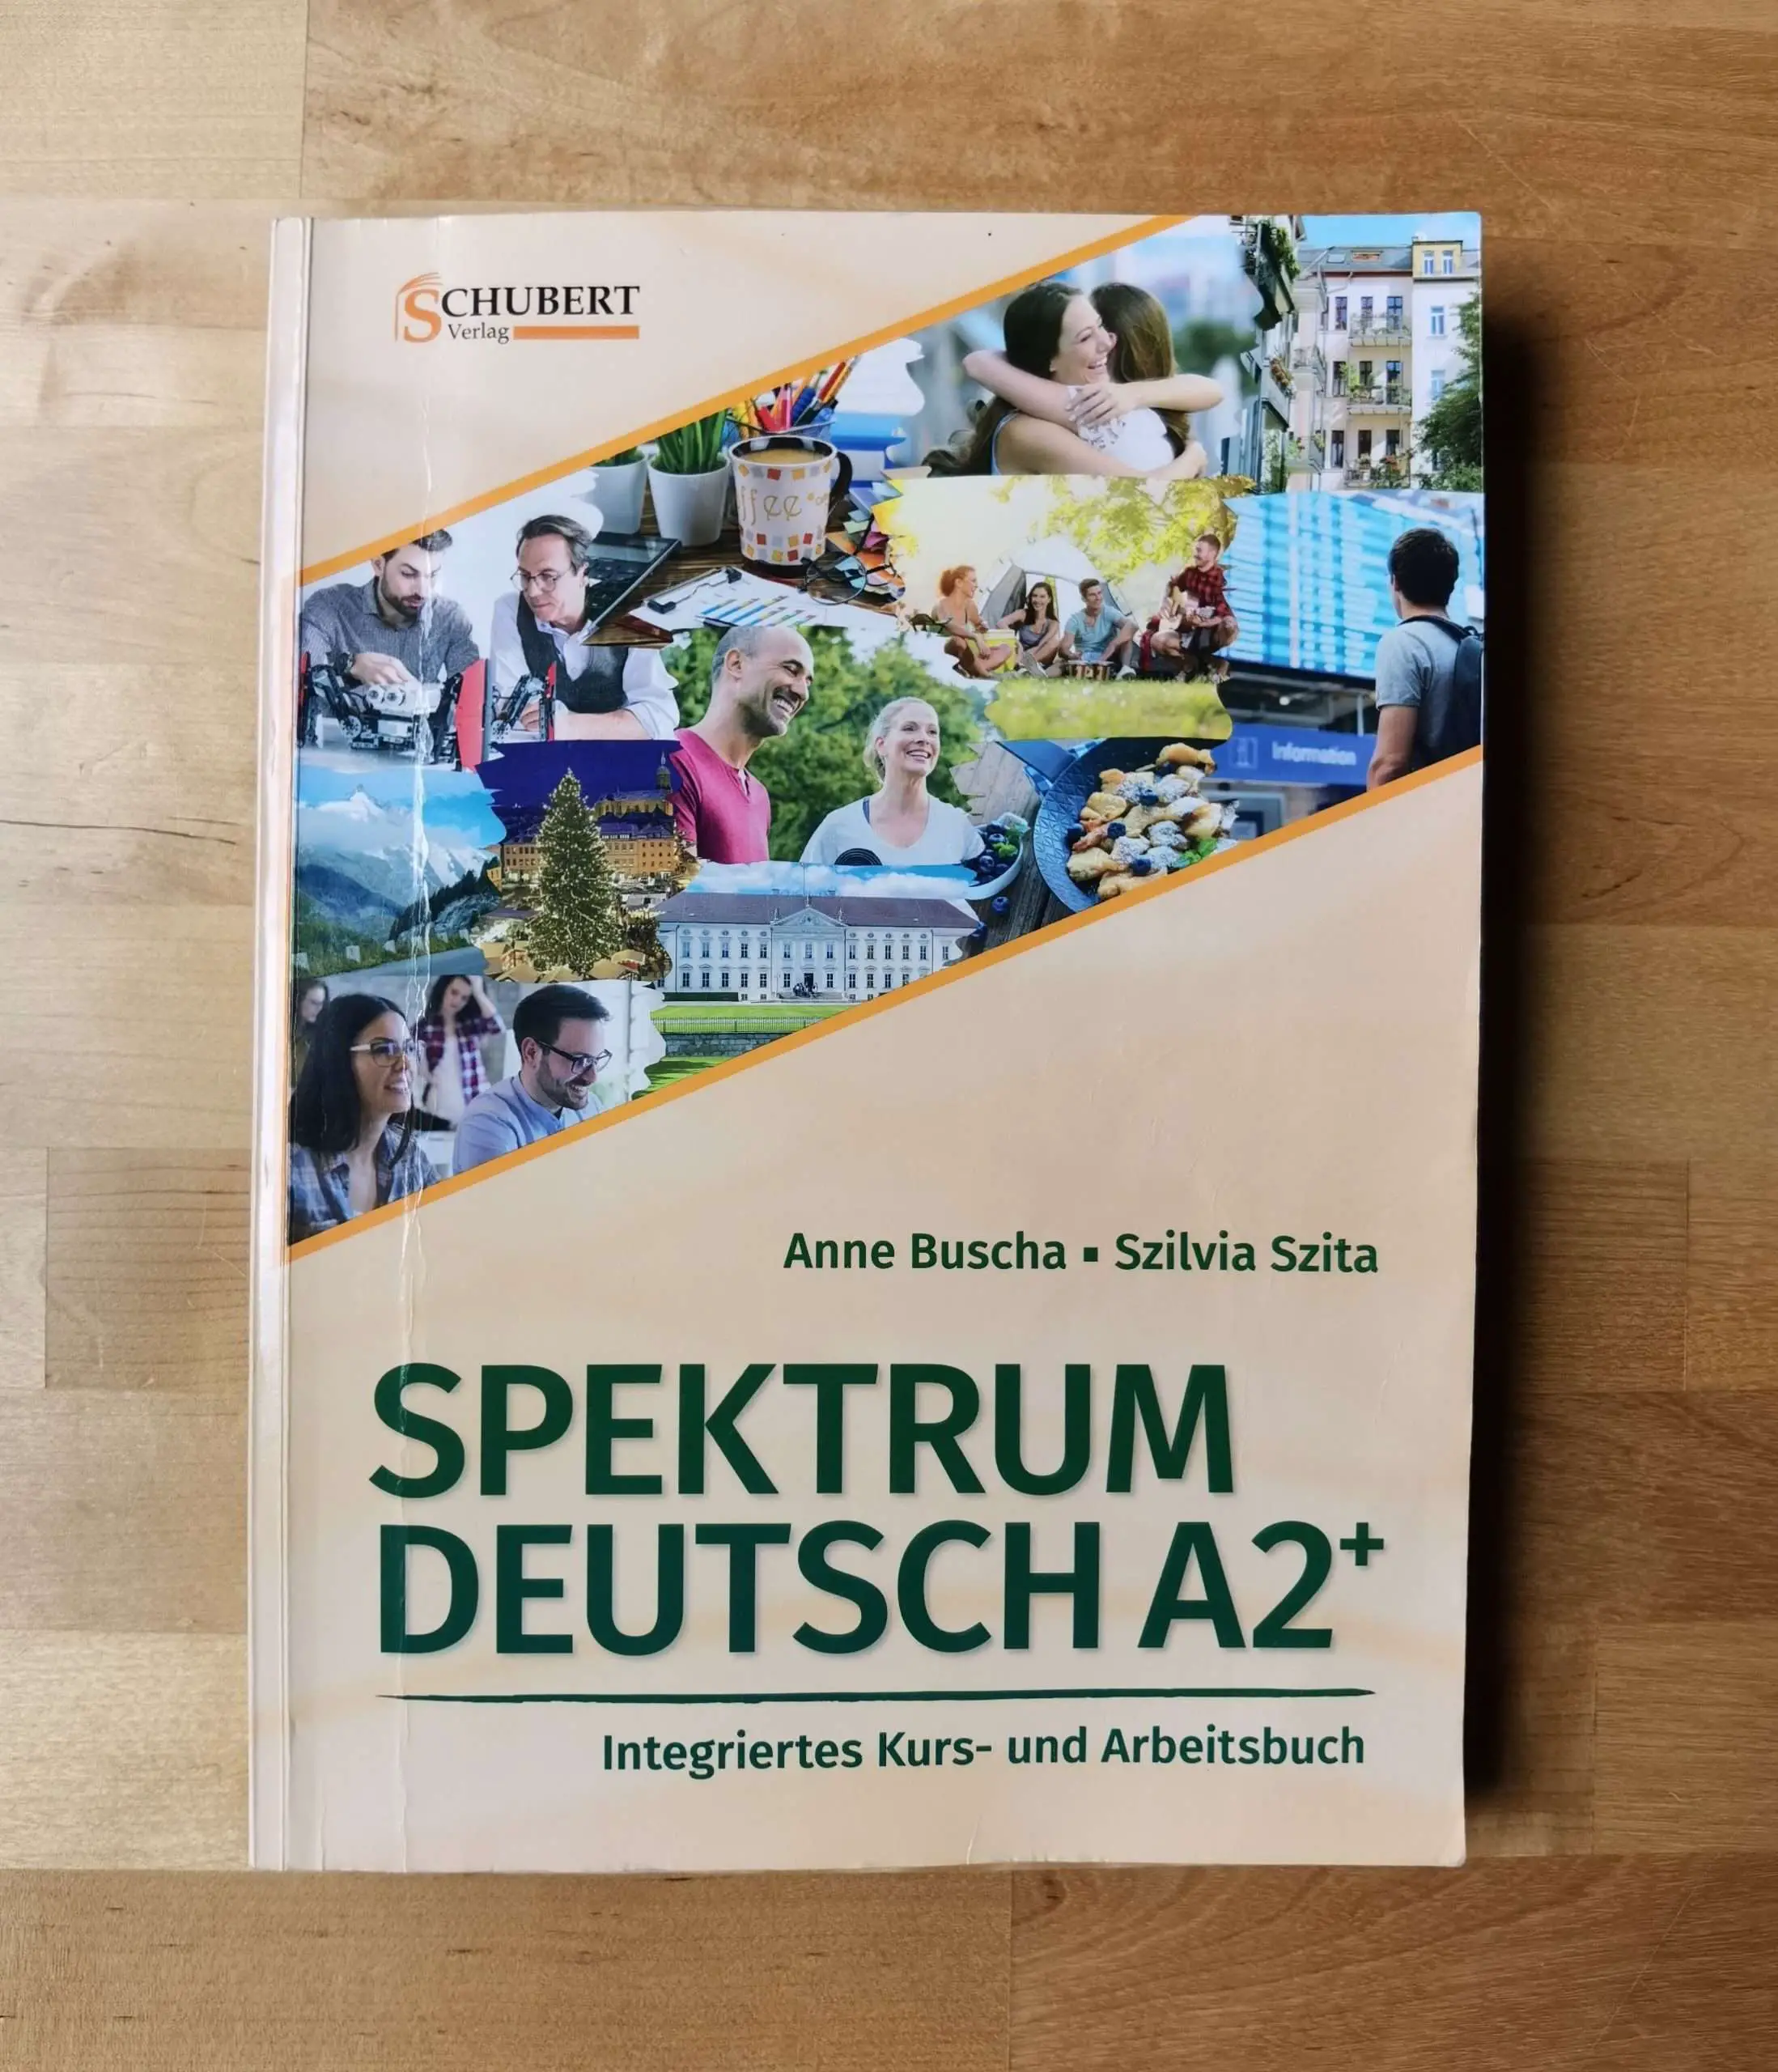 Spektrum A2 vom Schubert Verlag scaled